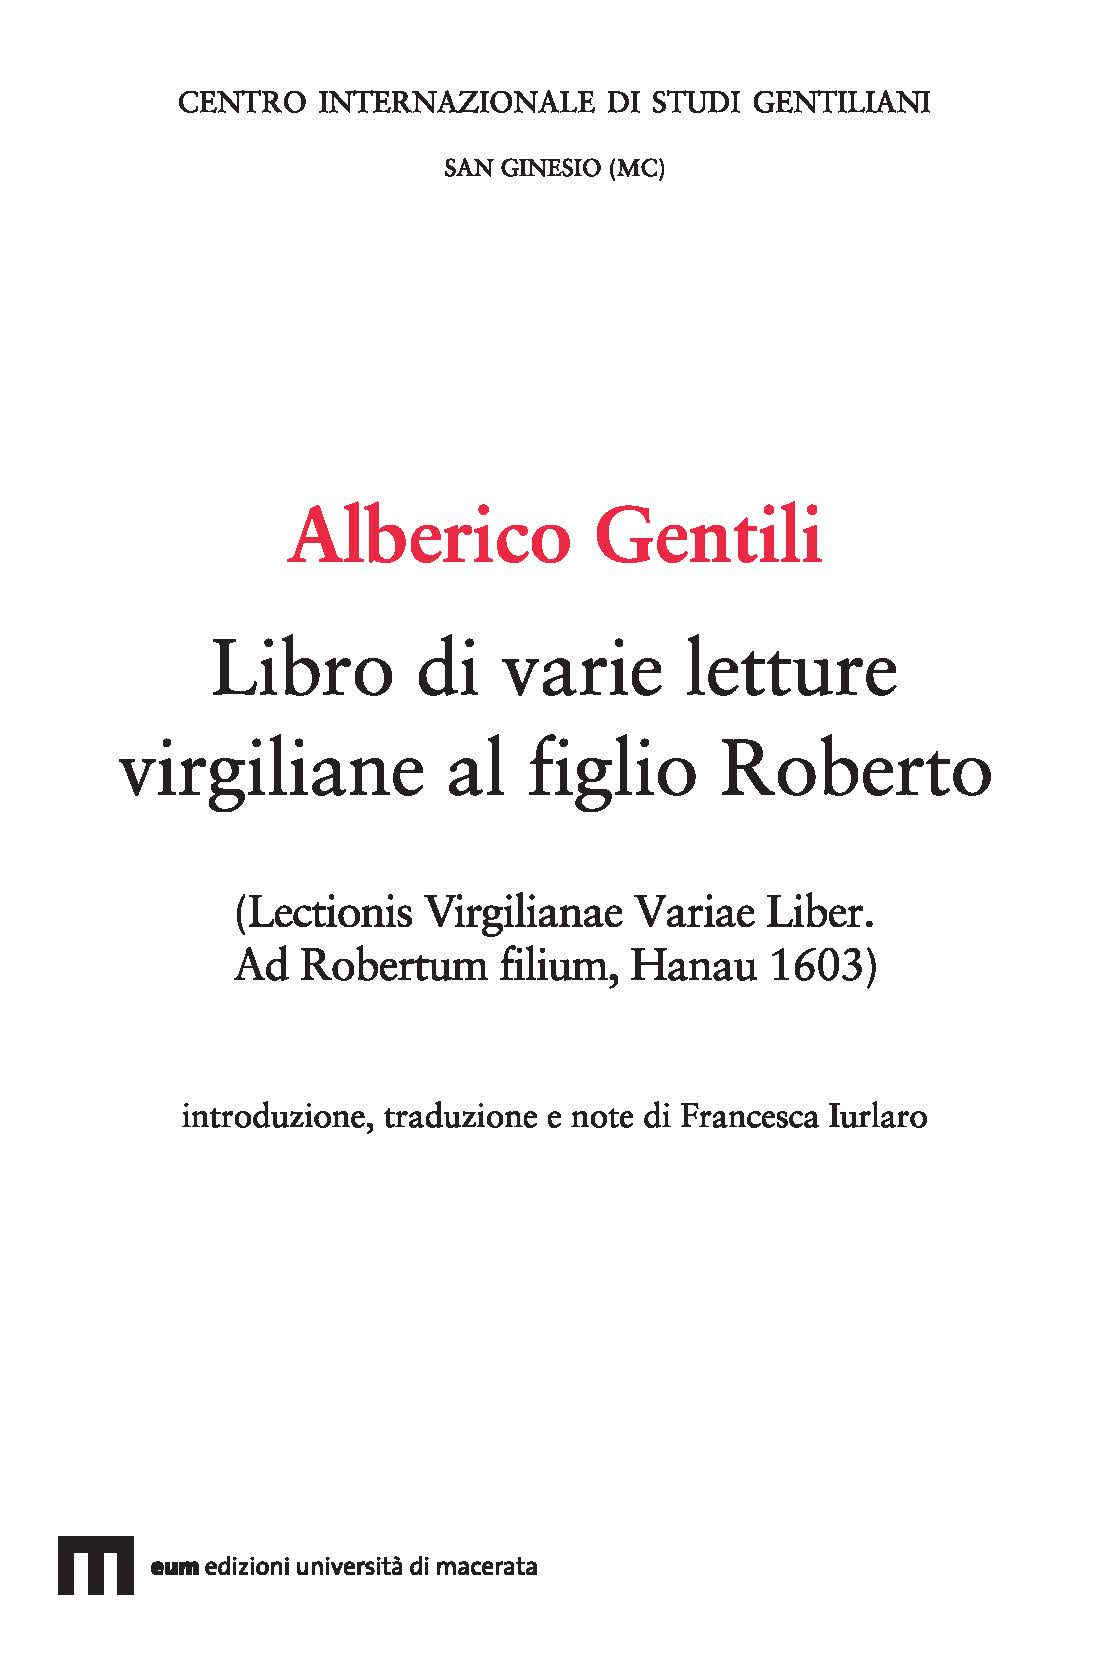 Alberico Gentili. Libro di varie letture virgiliane al figlio Roberto